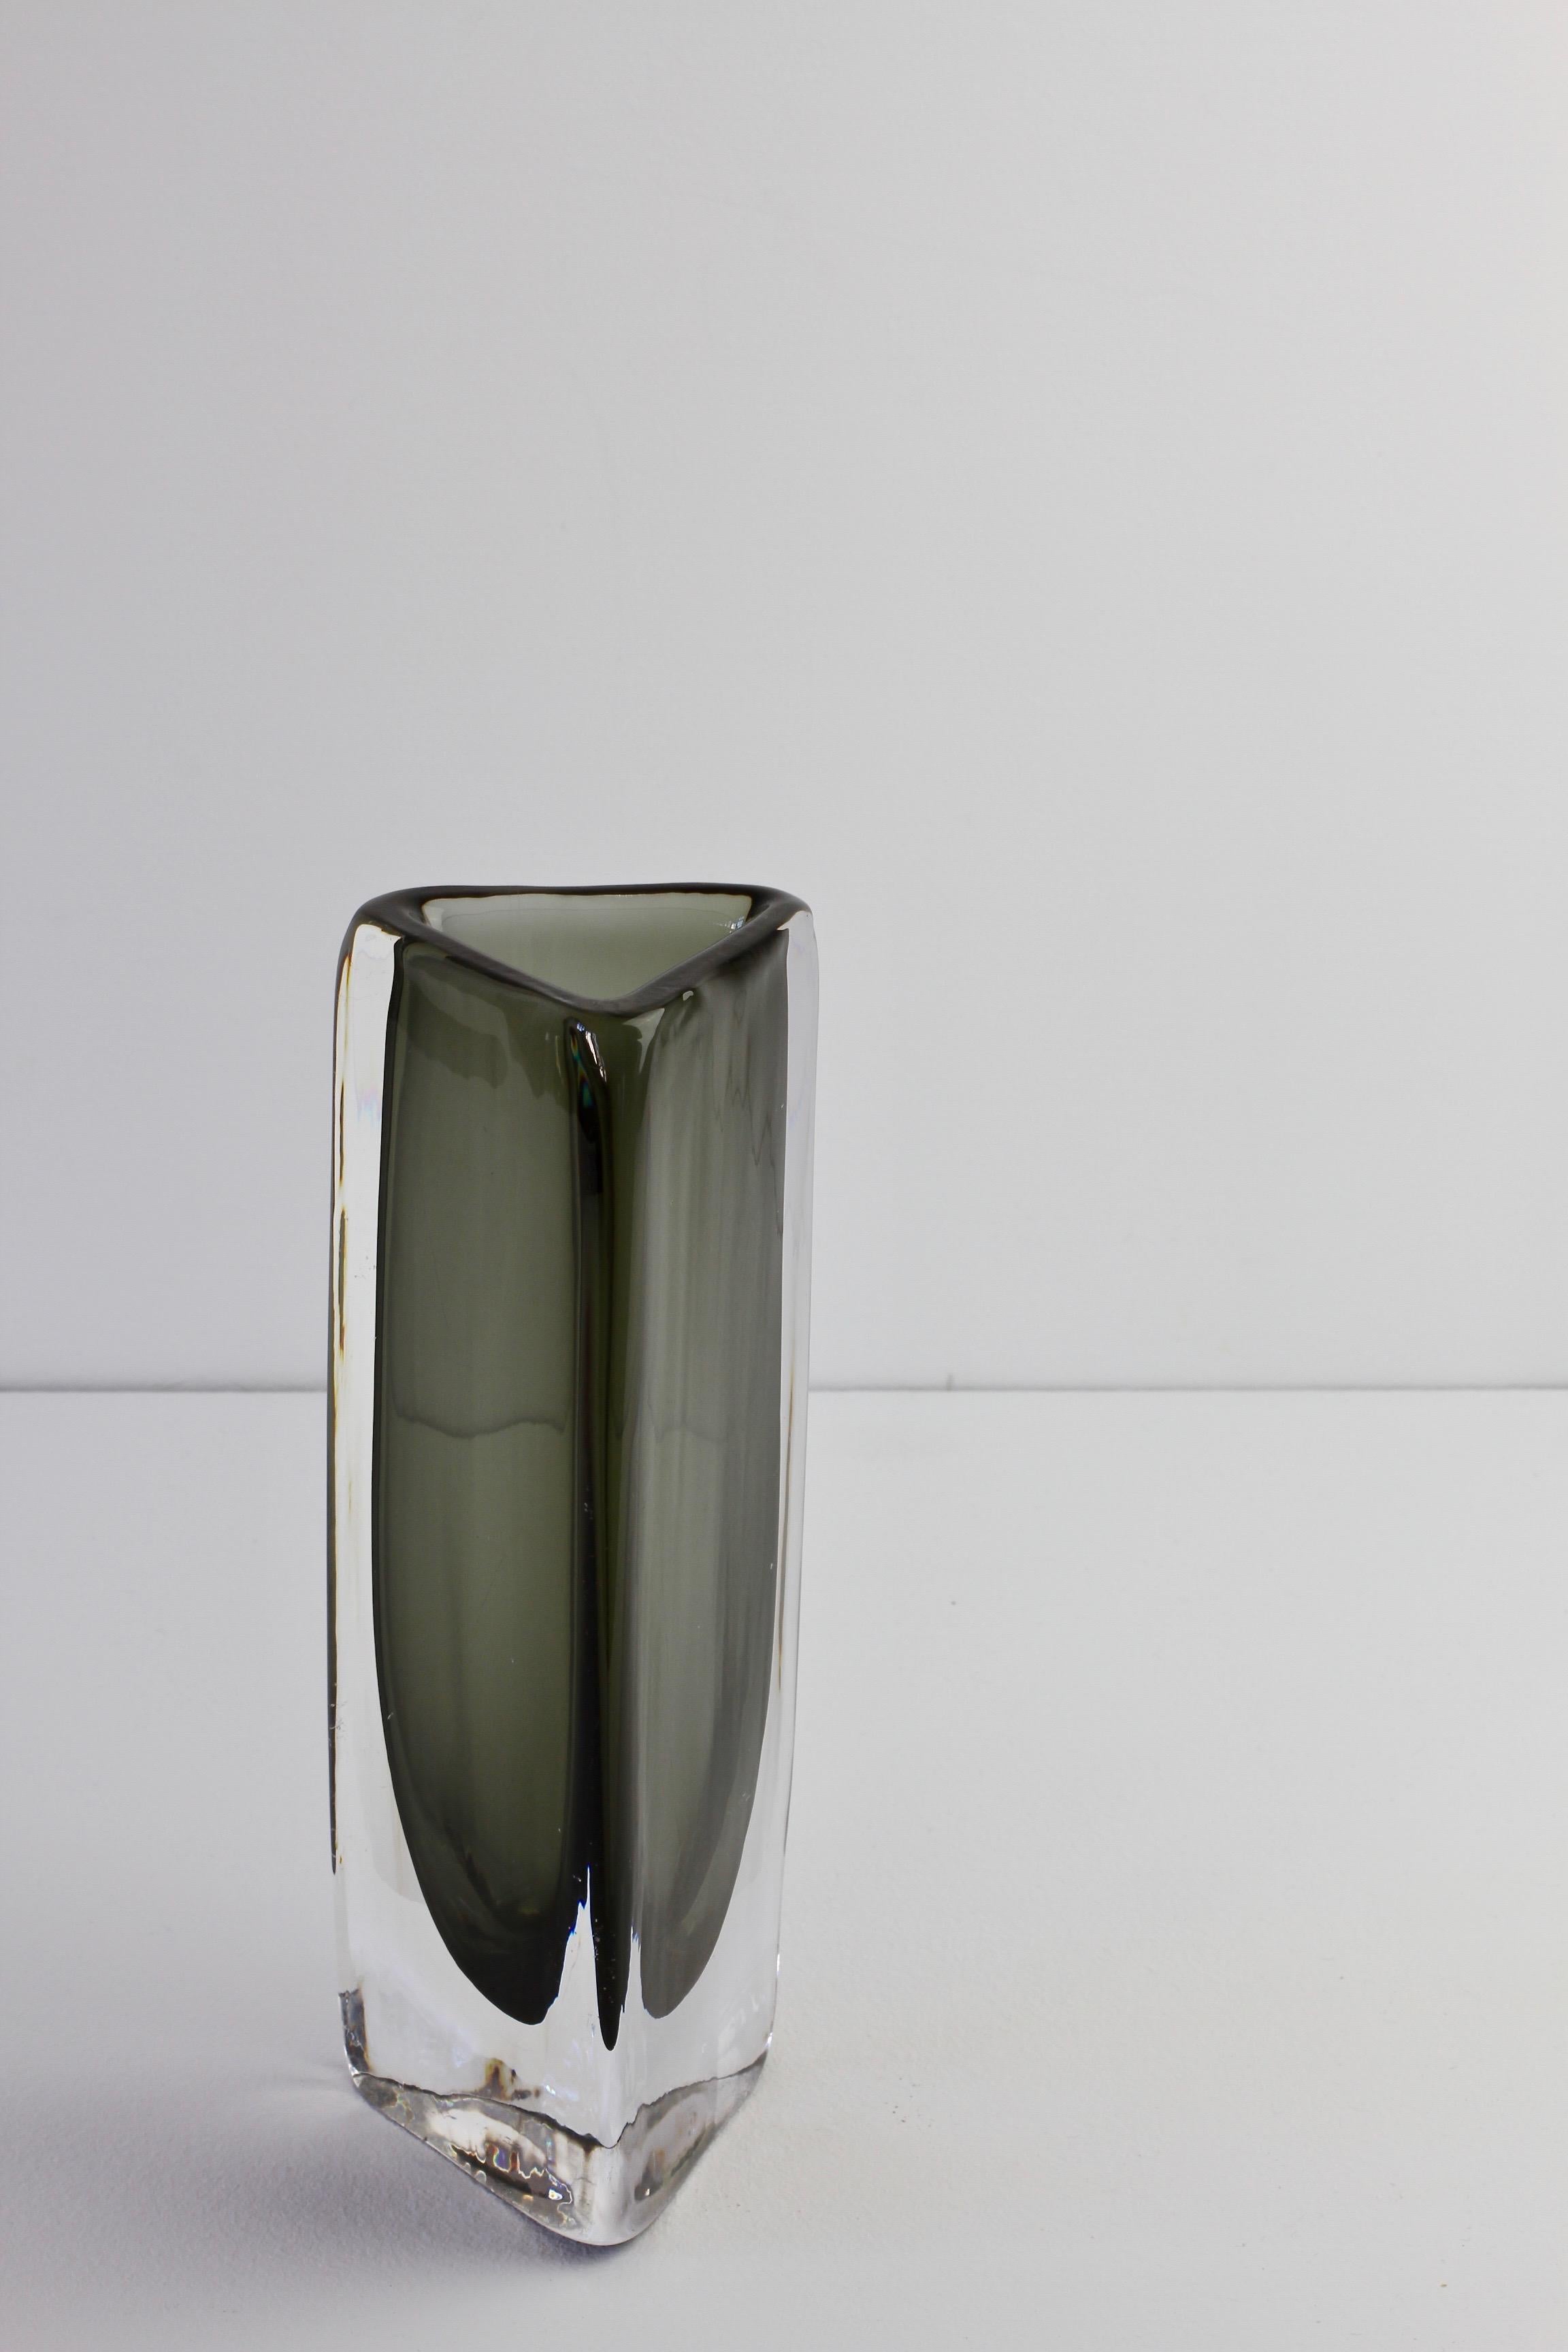 Grand vase en verre Sommerso des années 1950 signé Nils Landberg pour Orrefors Glass en vente 8